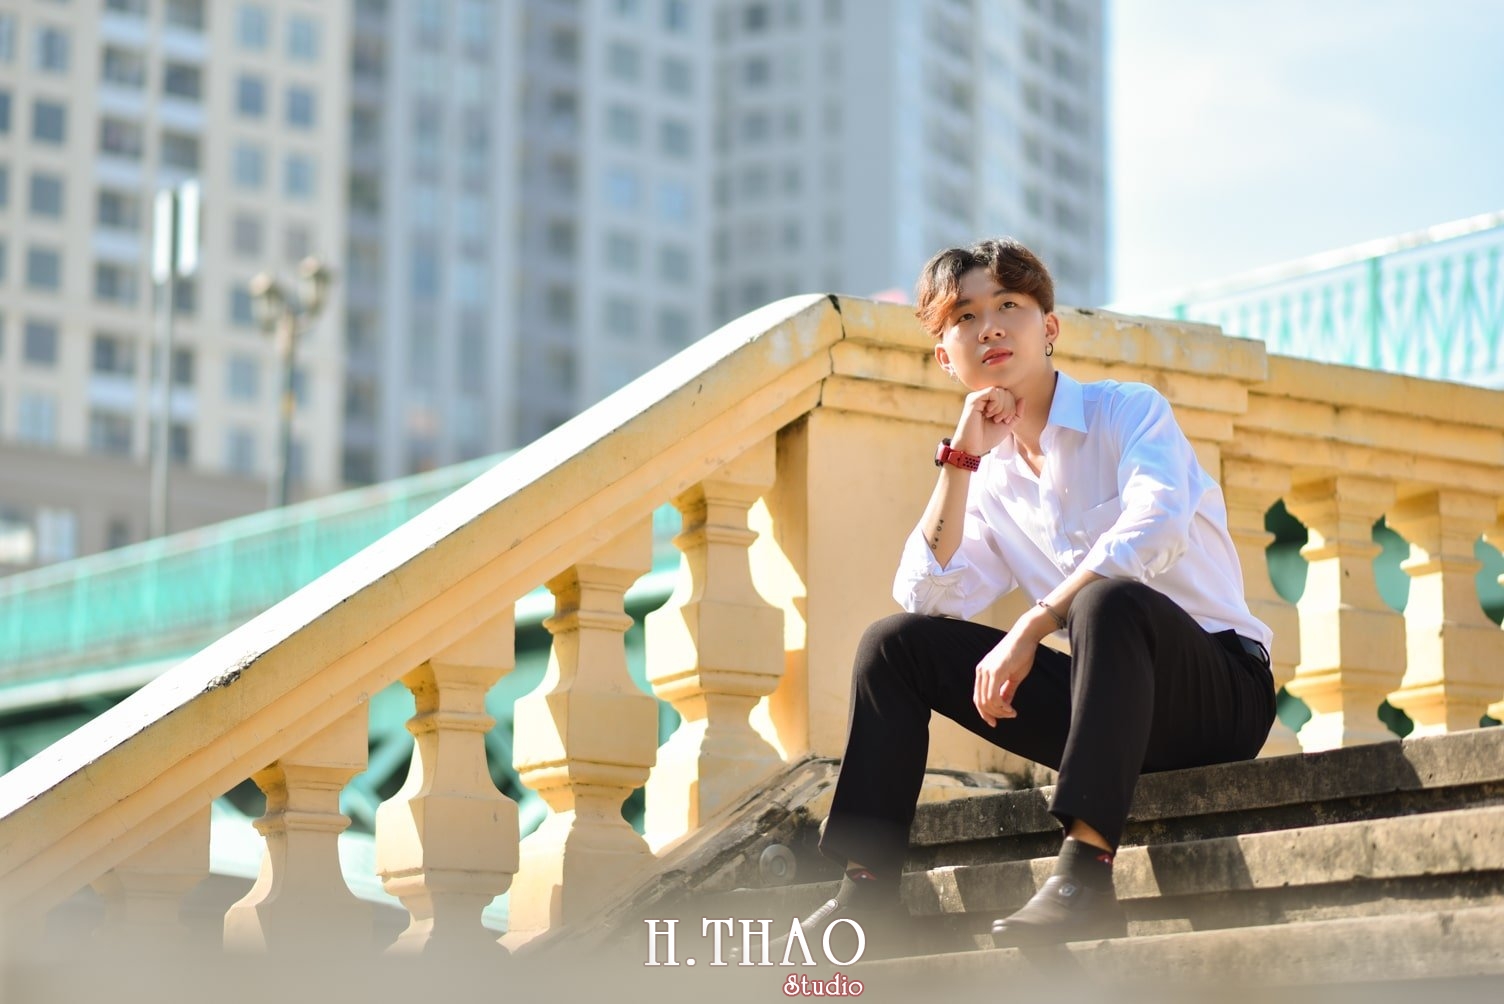 Anh nam buon 8 min - #7 Địa điểm chụp ngoại cảnh Sài Gòn siêu đẹp - HThao Studio